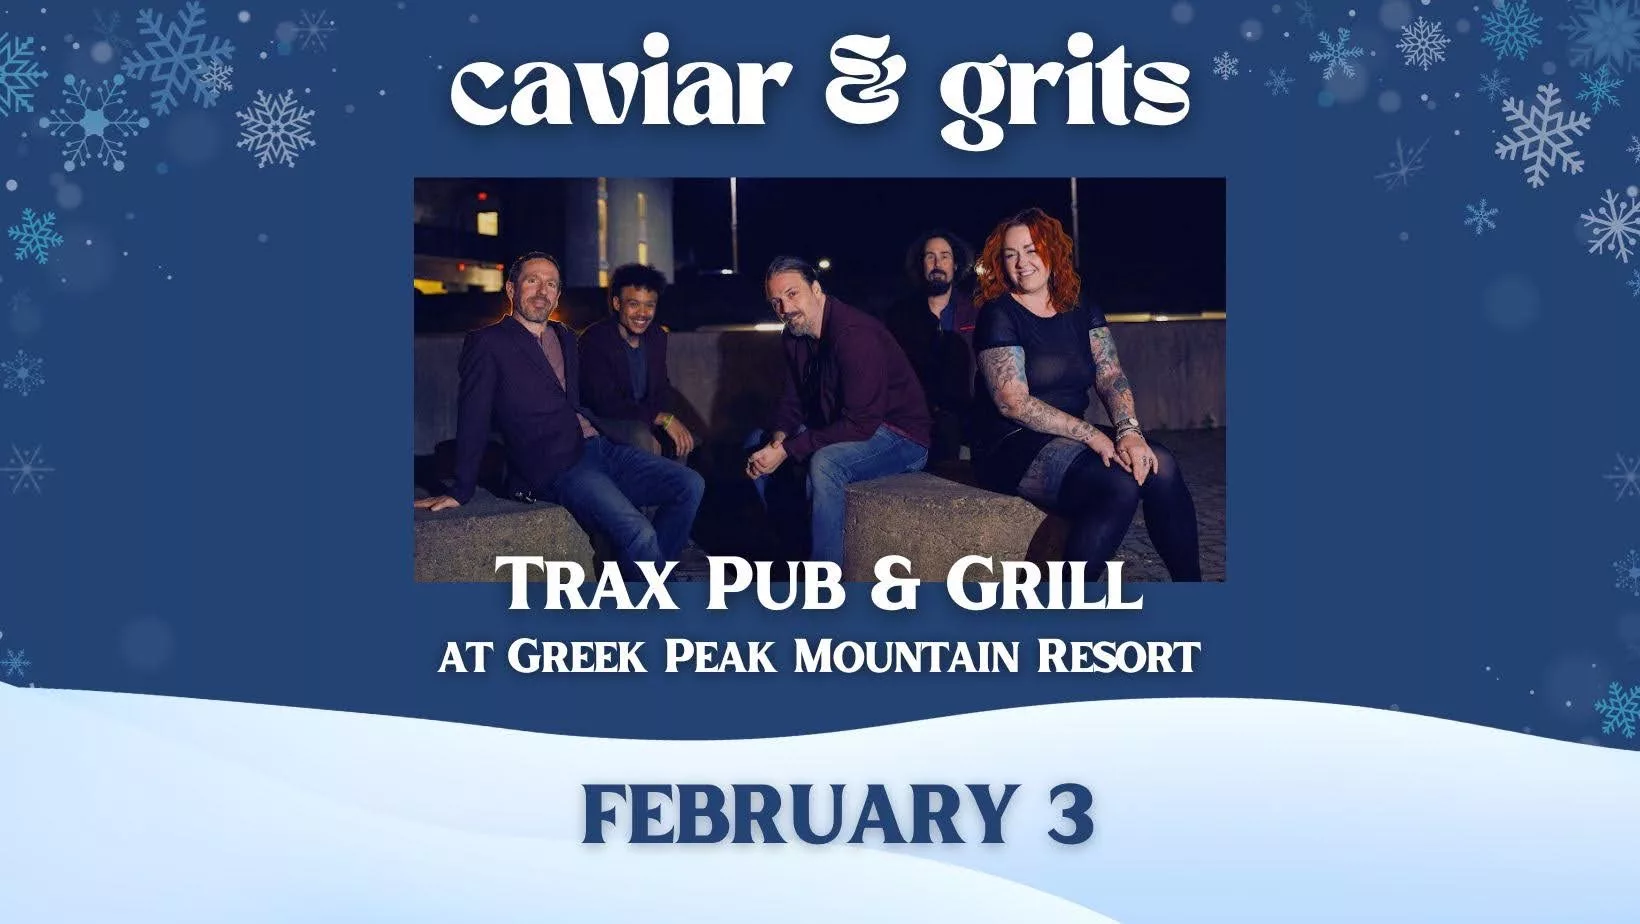 Caviar & Grits at Trax Pub & Grill